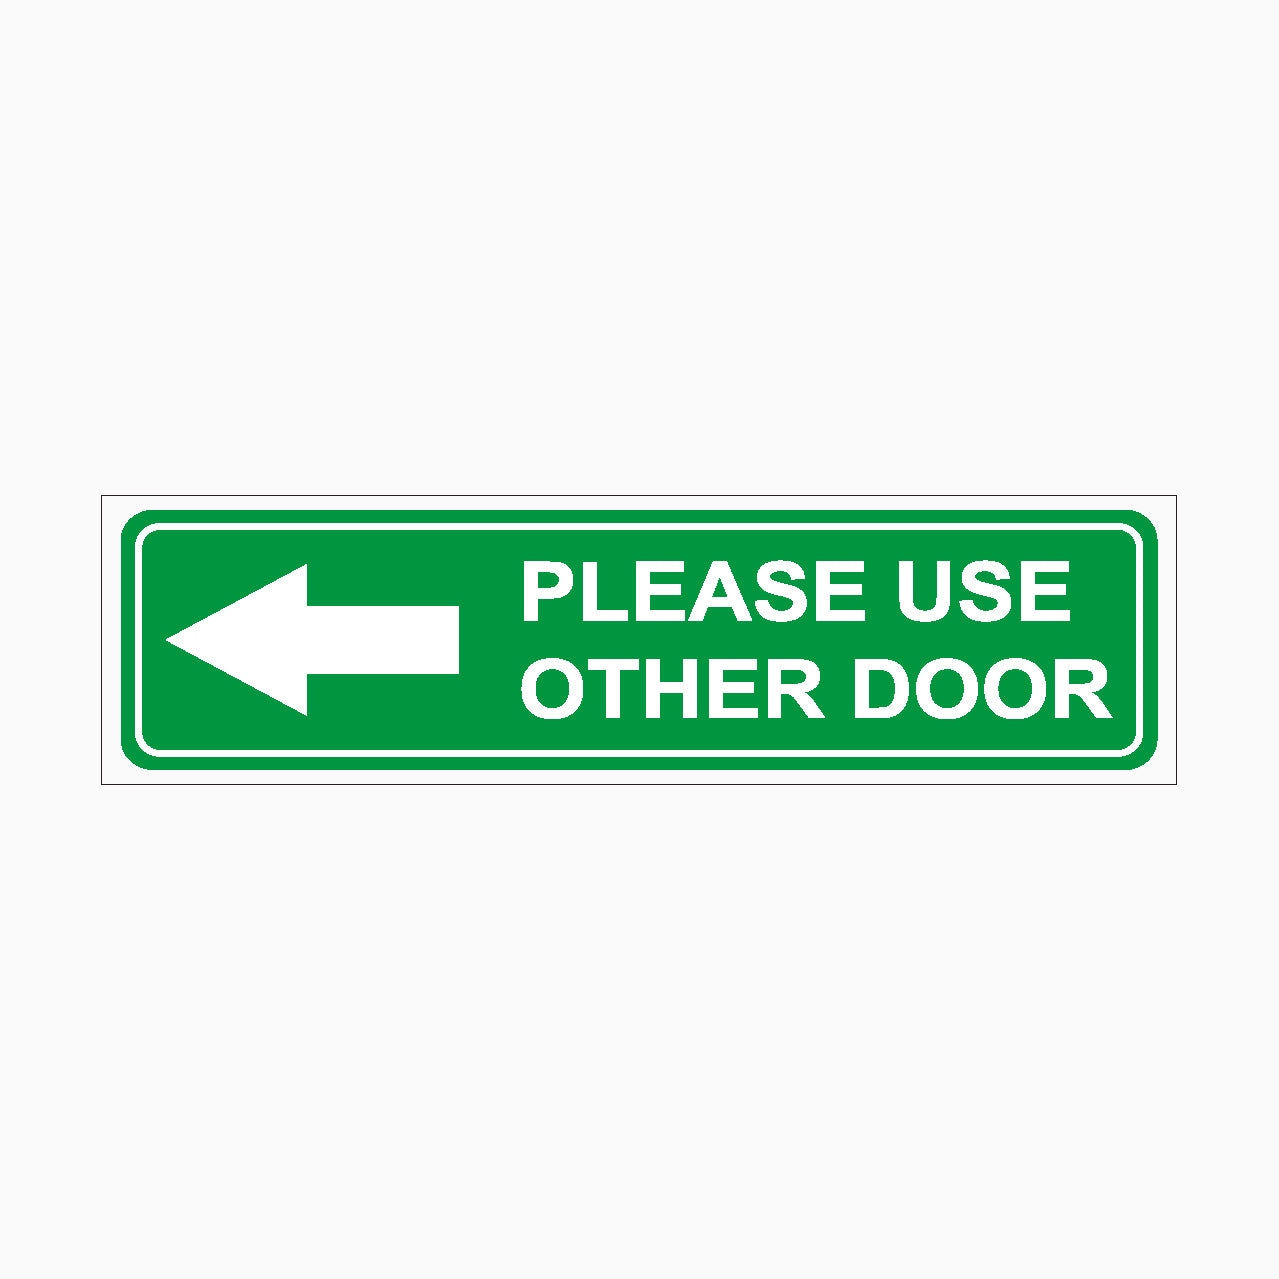 PLEASE USE OTHER DOOR SIGN - LEFT ARROW